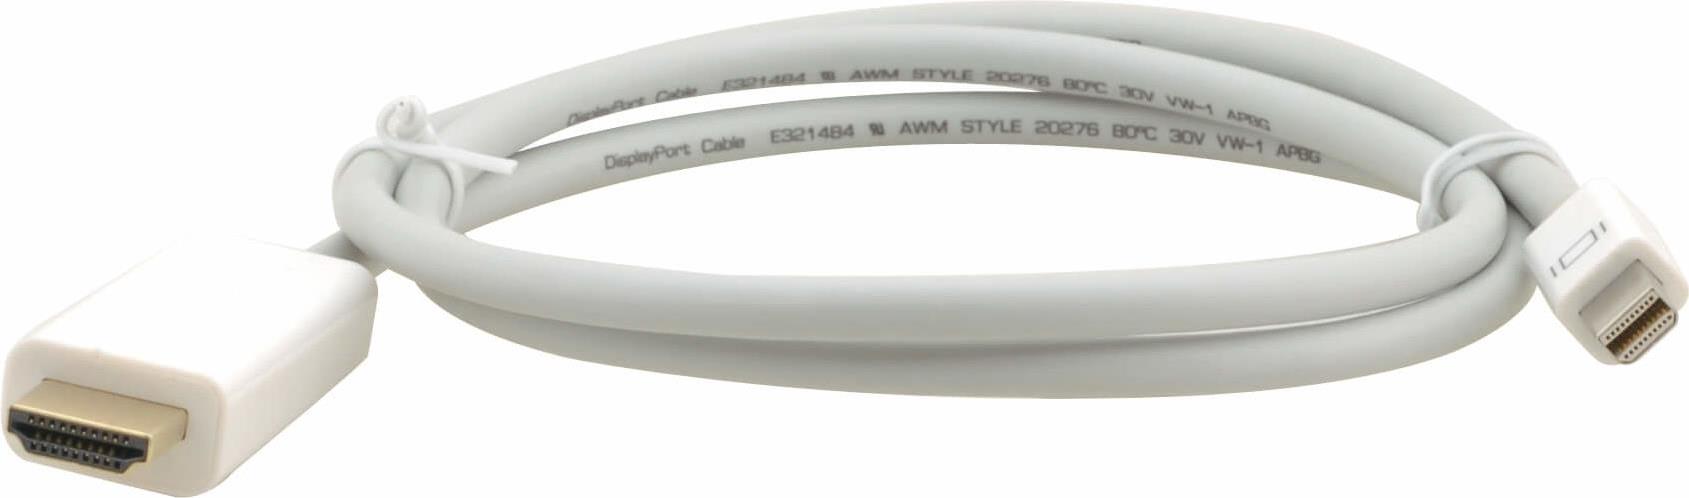 Kramer Electronics C-MDP/HM-10 Videokabel-Adapter 3 m HDMI Typ A (Standard) Mini DisplayPort Weiß (97-16010010)